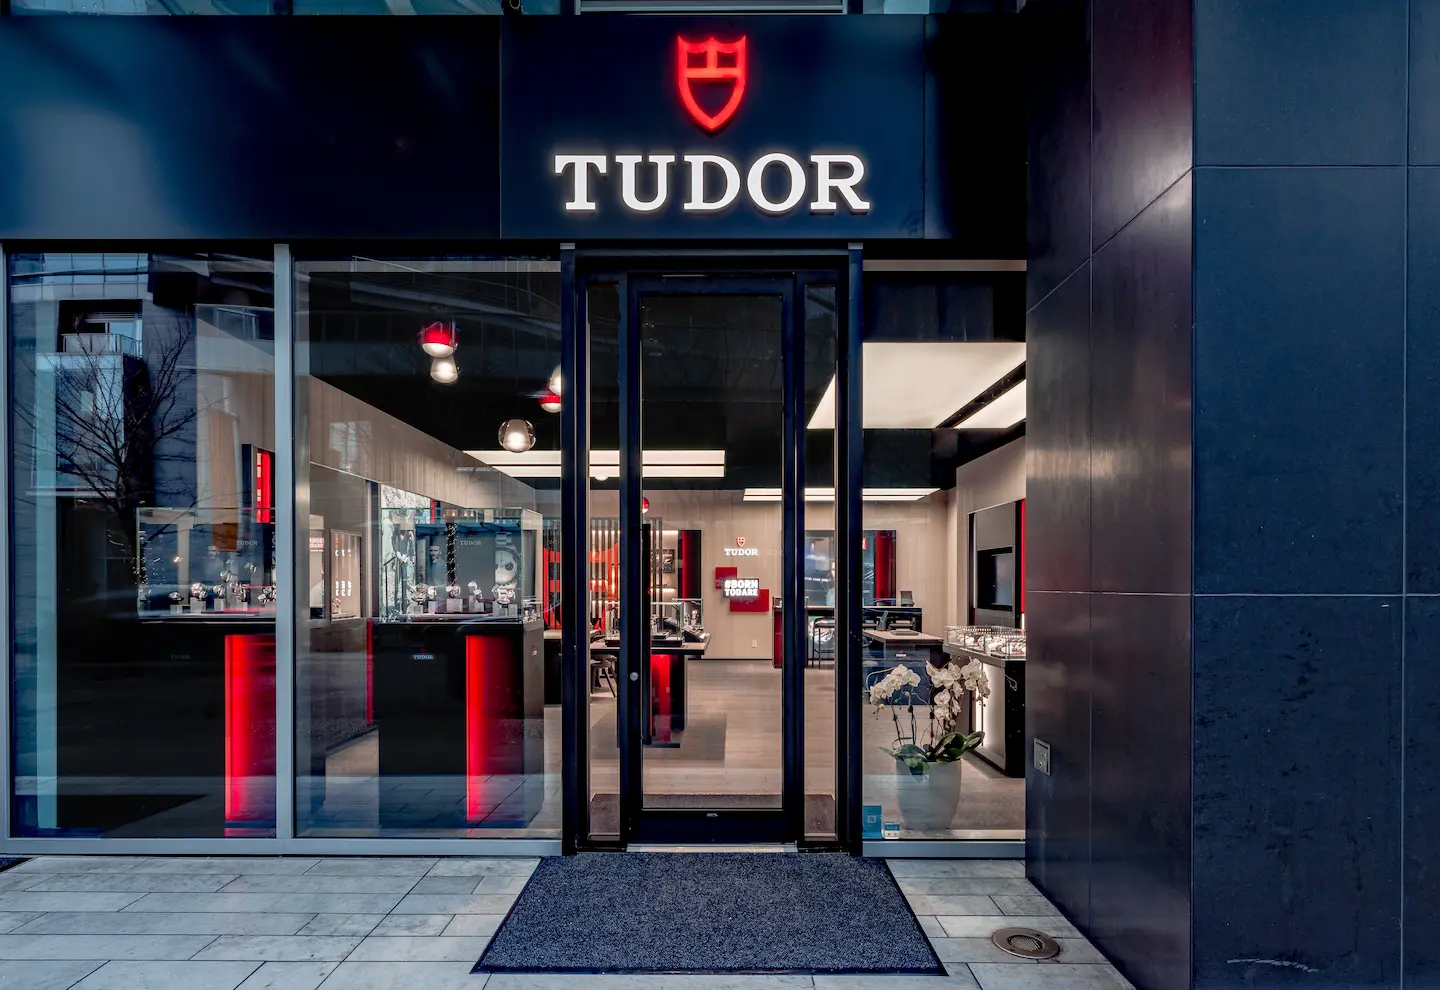 Tudor1106 5